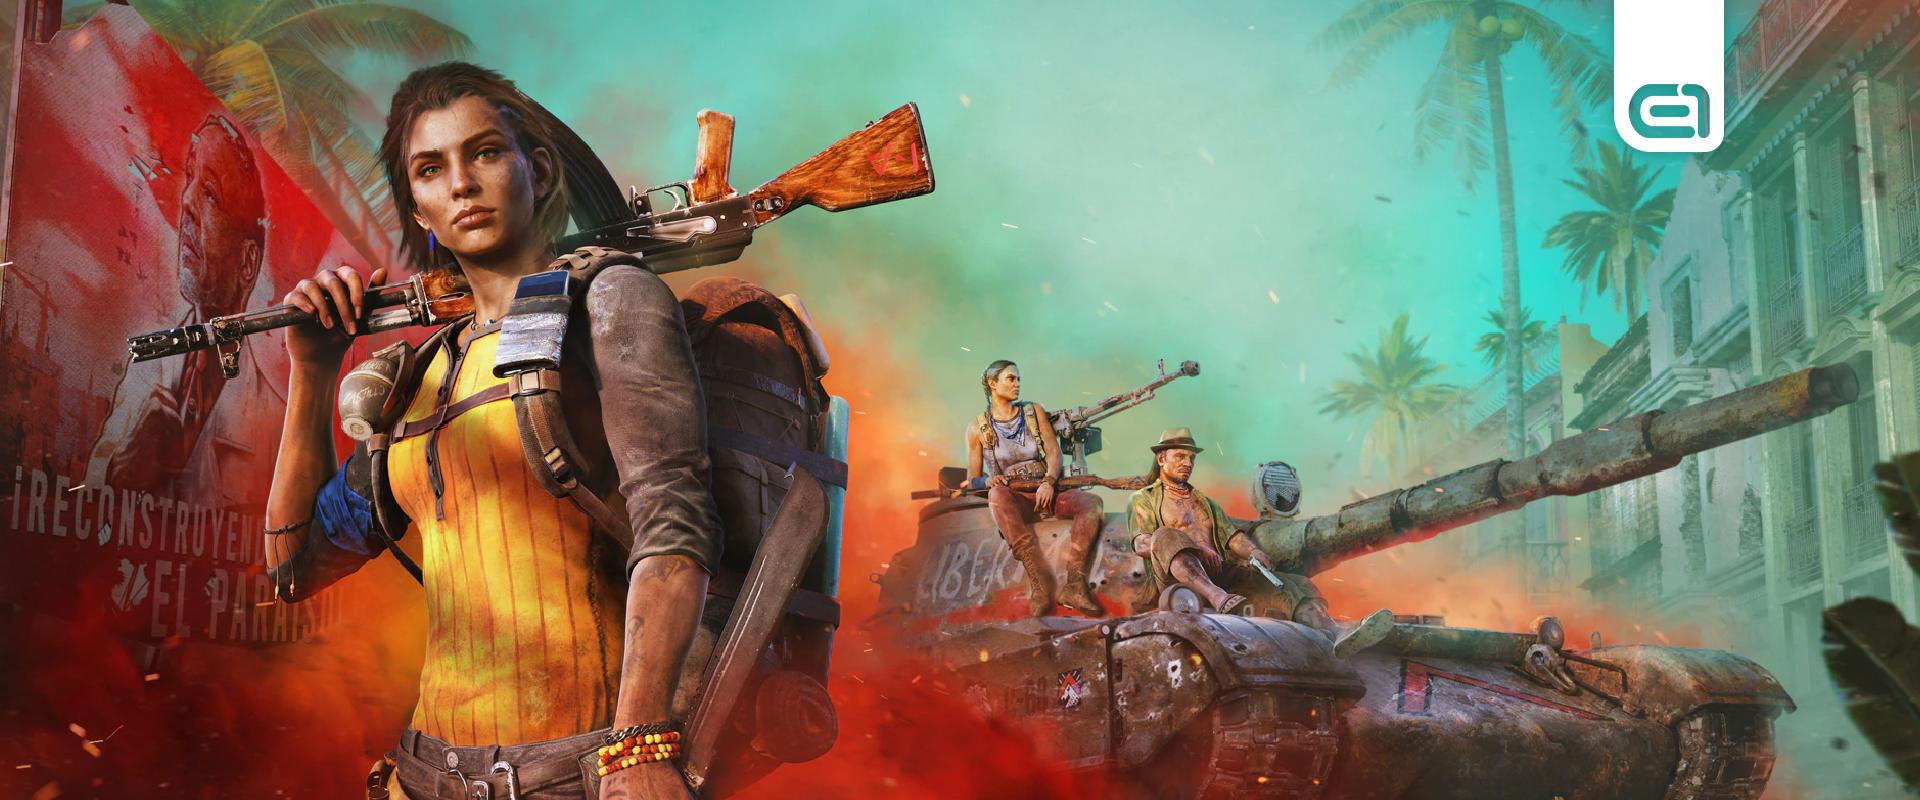 Gaming: Itt a lehetőség, ingyen játszható a Far Cry 6!